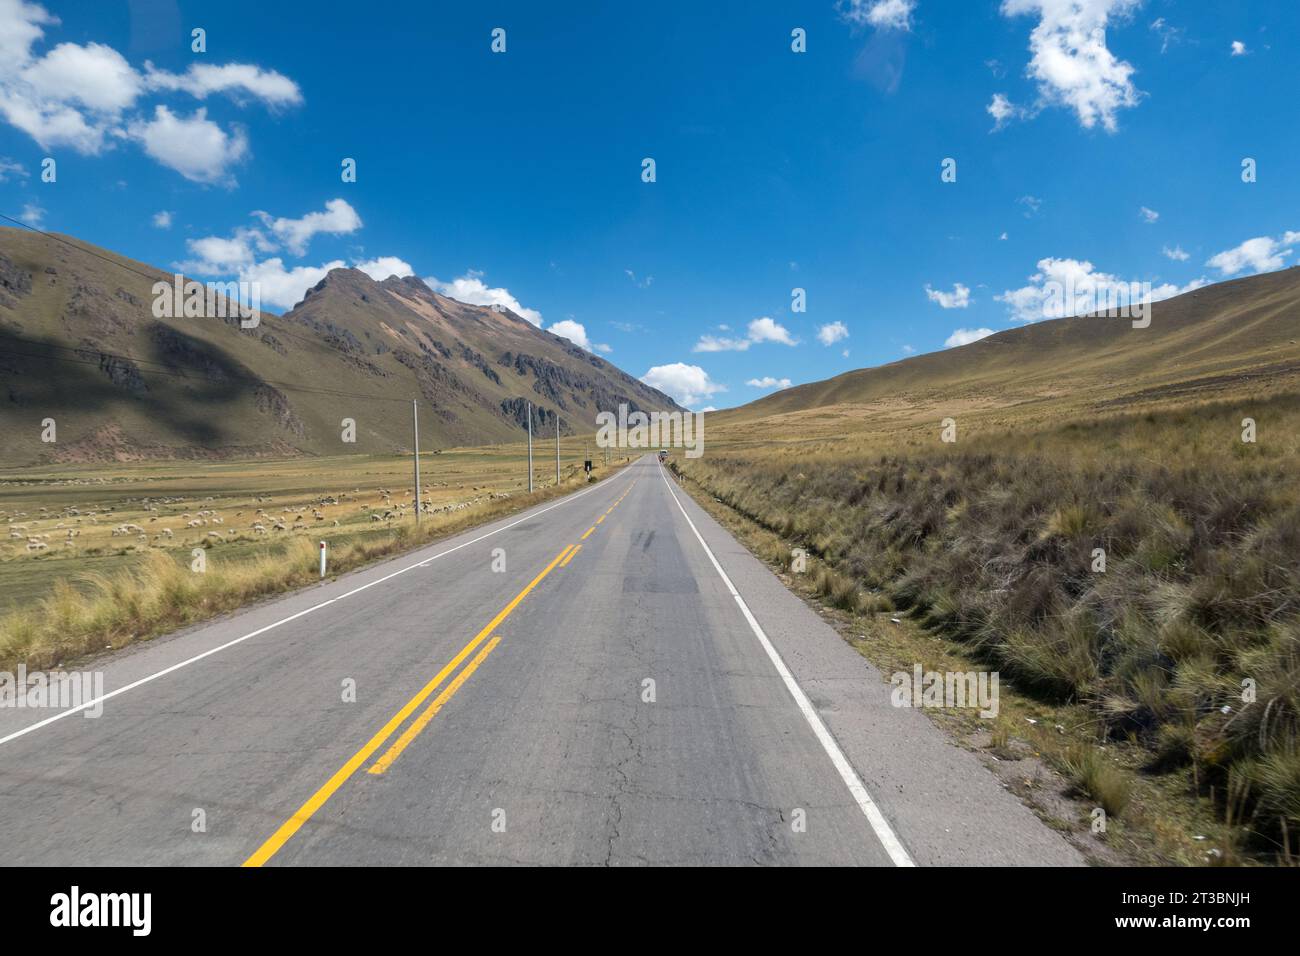 Andenstraße, Peru. Diese Straße beschwört eine ferne Reise in unendliche Horizonte. Stockfoto